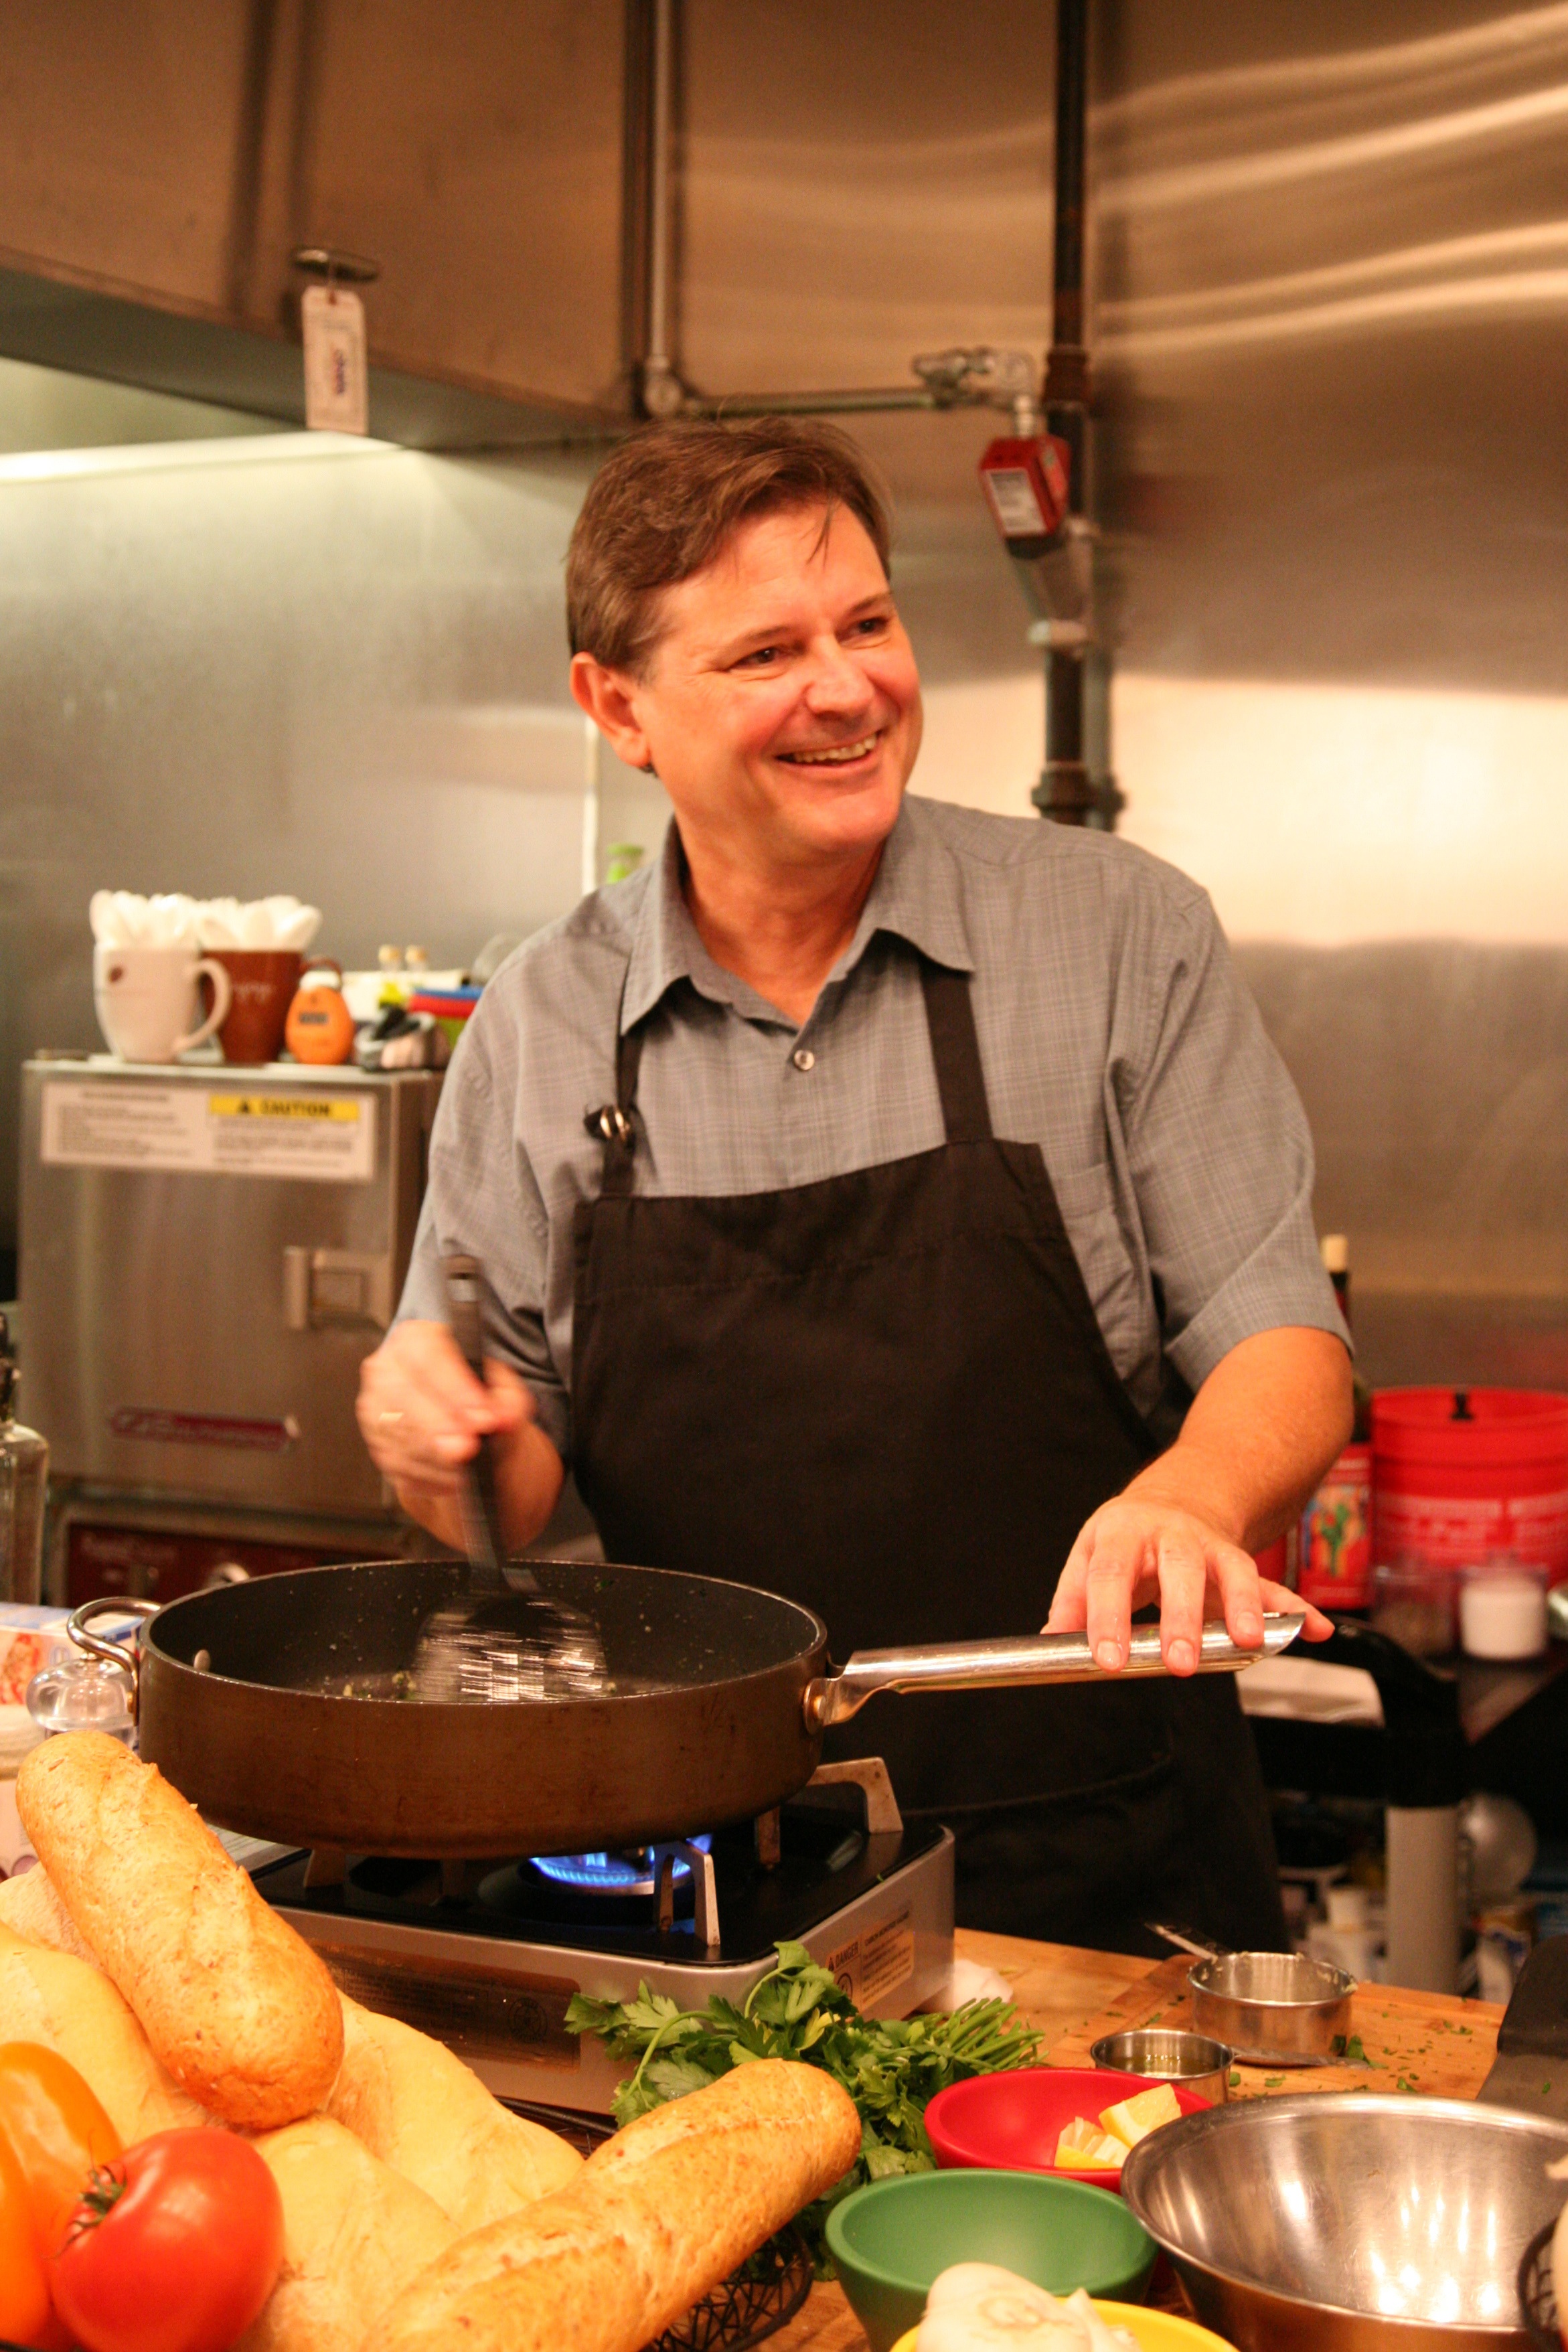 Chef Warren cooking